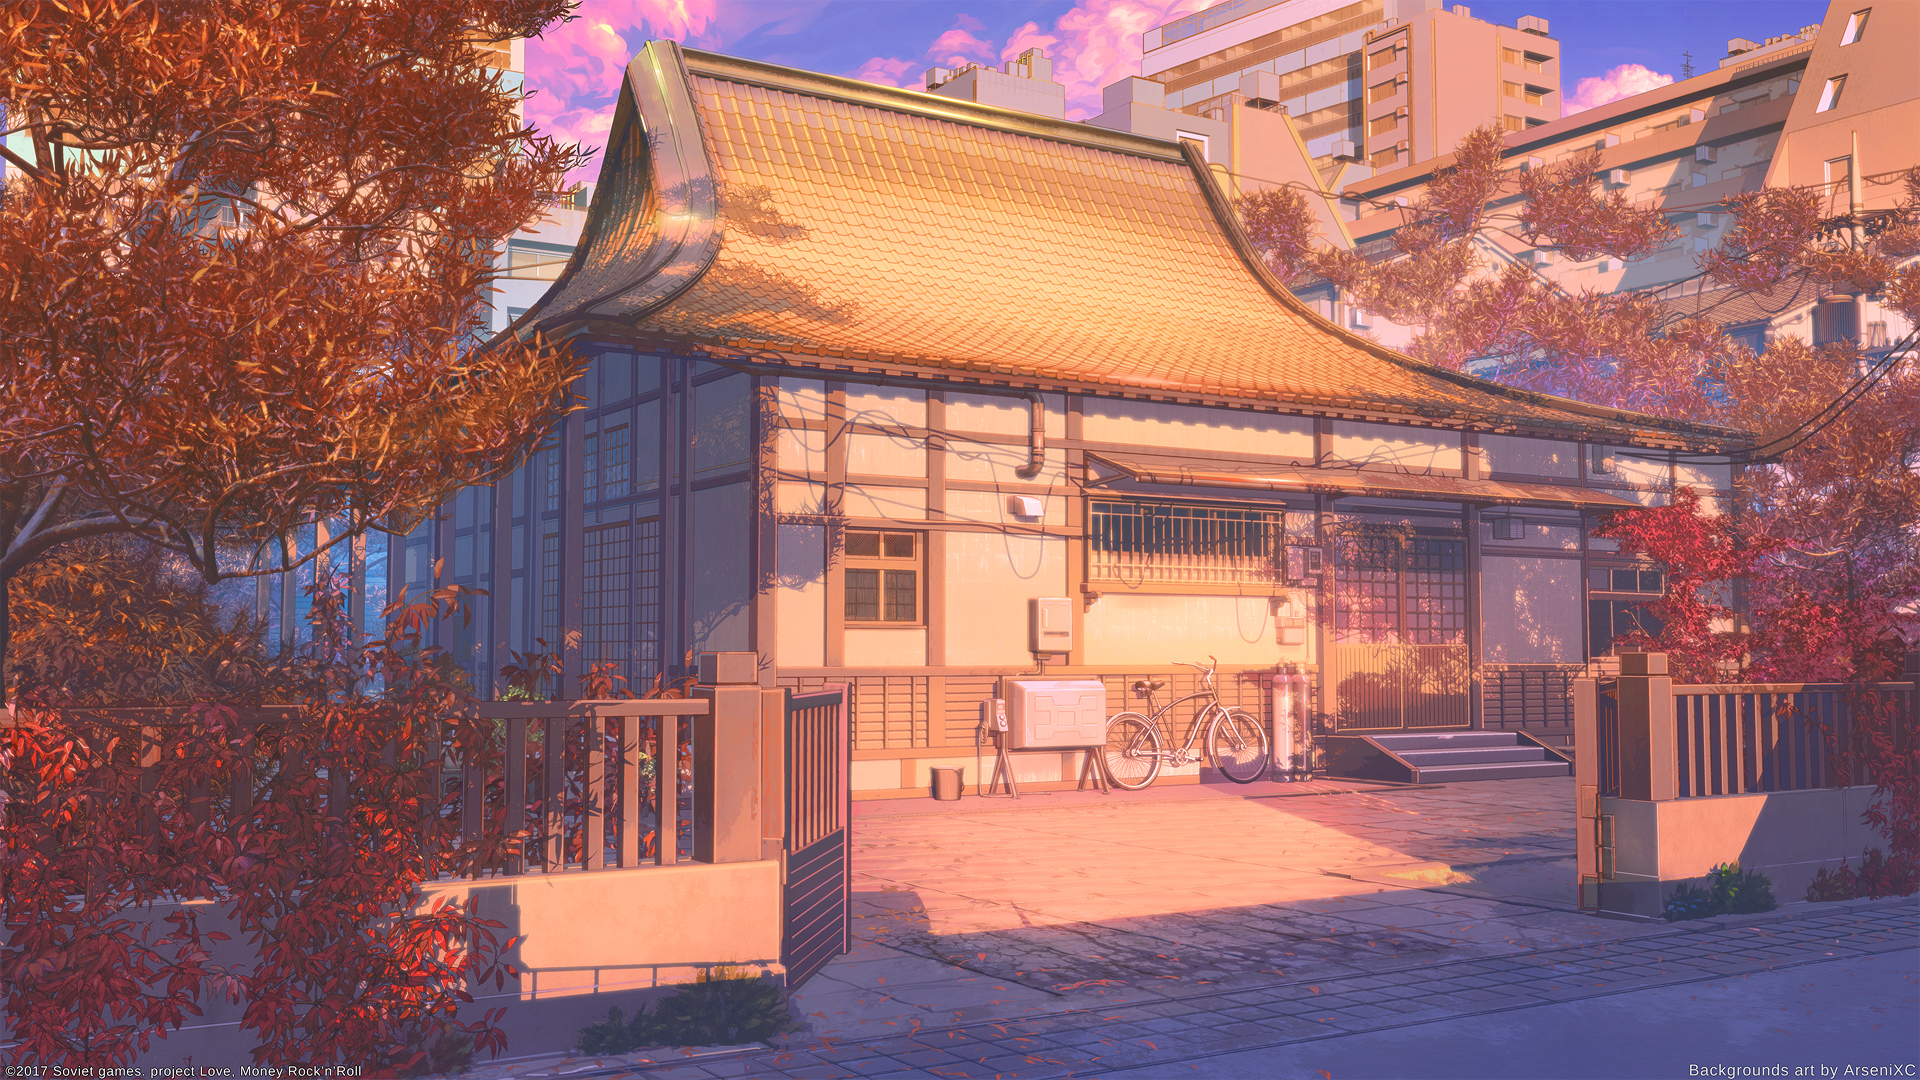 Khám phá tòa nhà Anime HD wallpaper, nơi đẹp như trong truyện tranh, phù hợp với những người yêu thích anime và phong cách độc đáo. Với sắc màu rực rỡ, tòa nhà anime sẽ mang đến cho không gian sống của bạn cảm giác mới mẻ và thú vị.